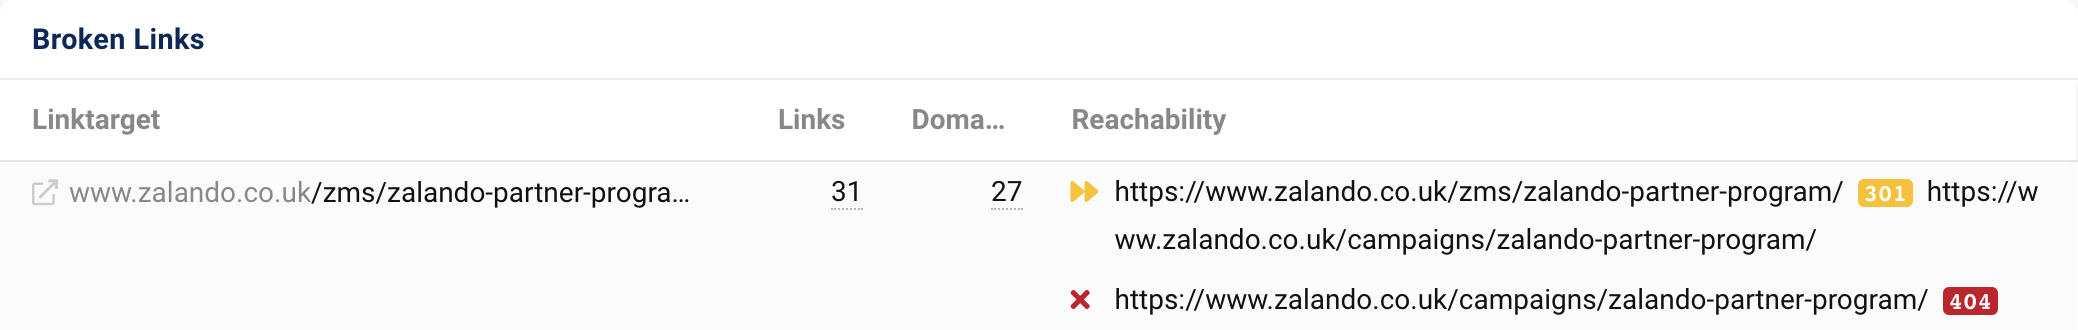 الرابط المستهدف zalando.co.uk/zms/zalando-partner-program/ يحصل على 31 رابطًا من 27 نطاقًا. بعد إعادة التوجيه 301، يُخرج عنوان URL رمز الحالة 404.